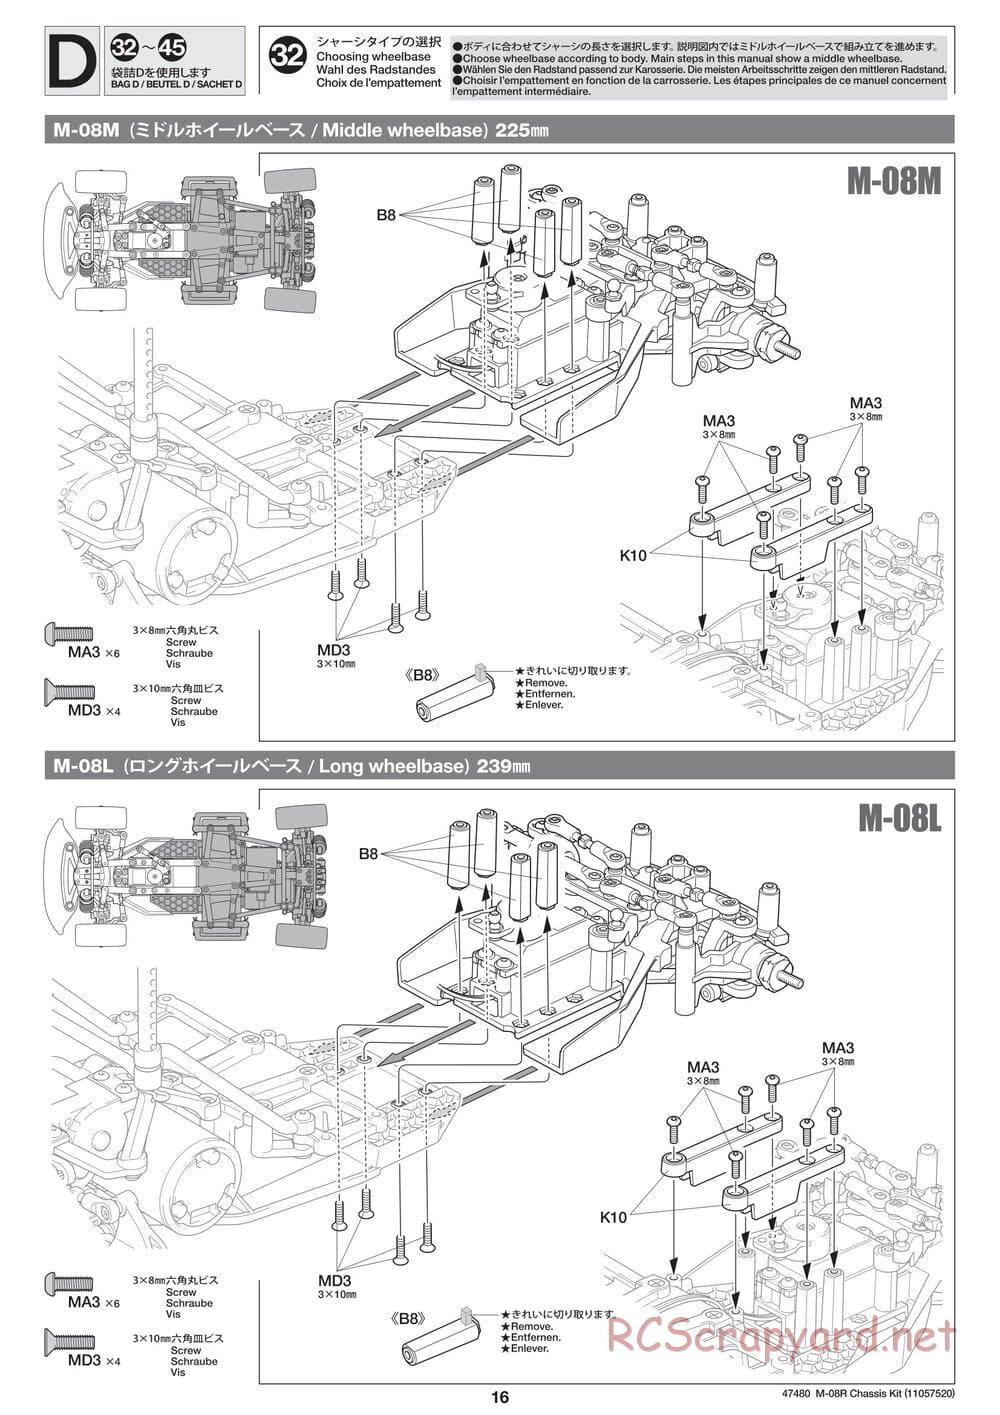 Tamiya - M-08R Chassis - Manual - Page 16